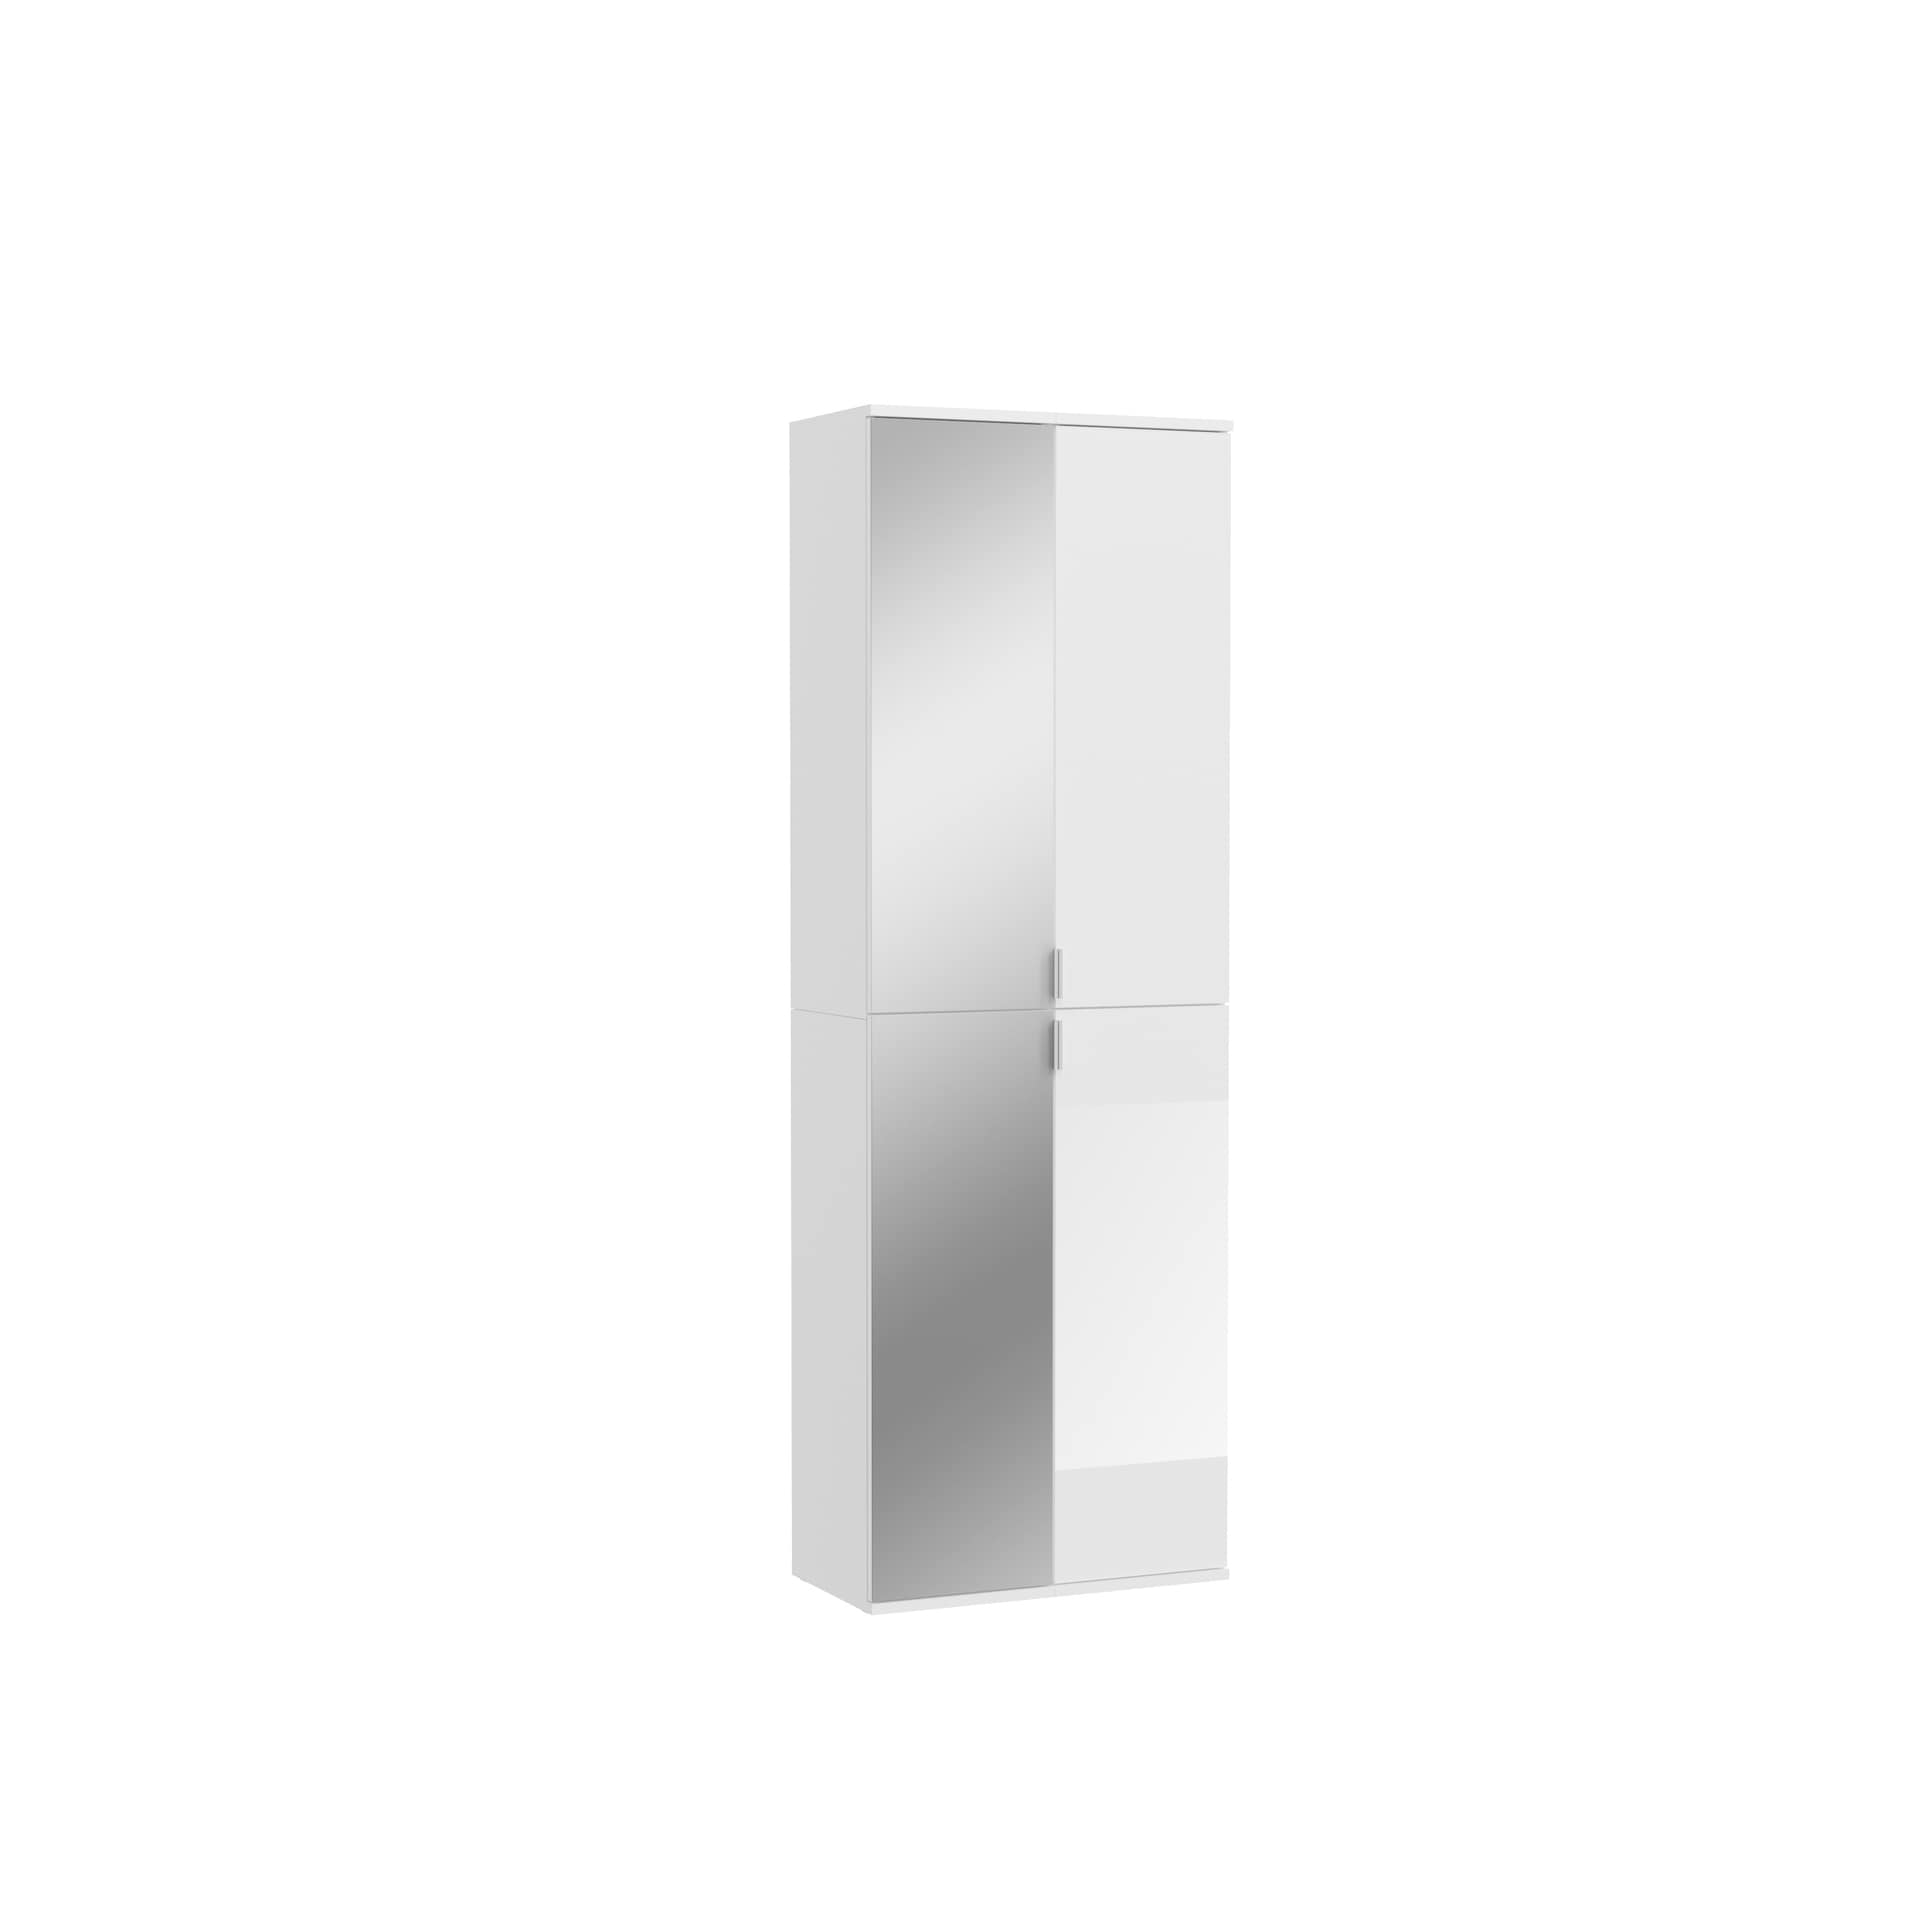 Garderobenkombination PROJEKT X 2-teilig 60 x 193 cm Spiegelfront/weiß Hochglanz